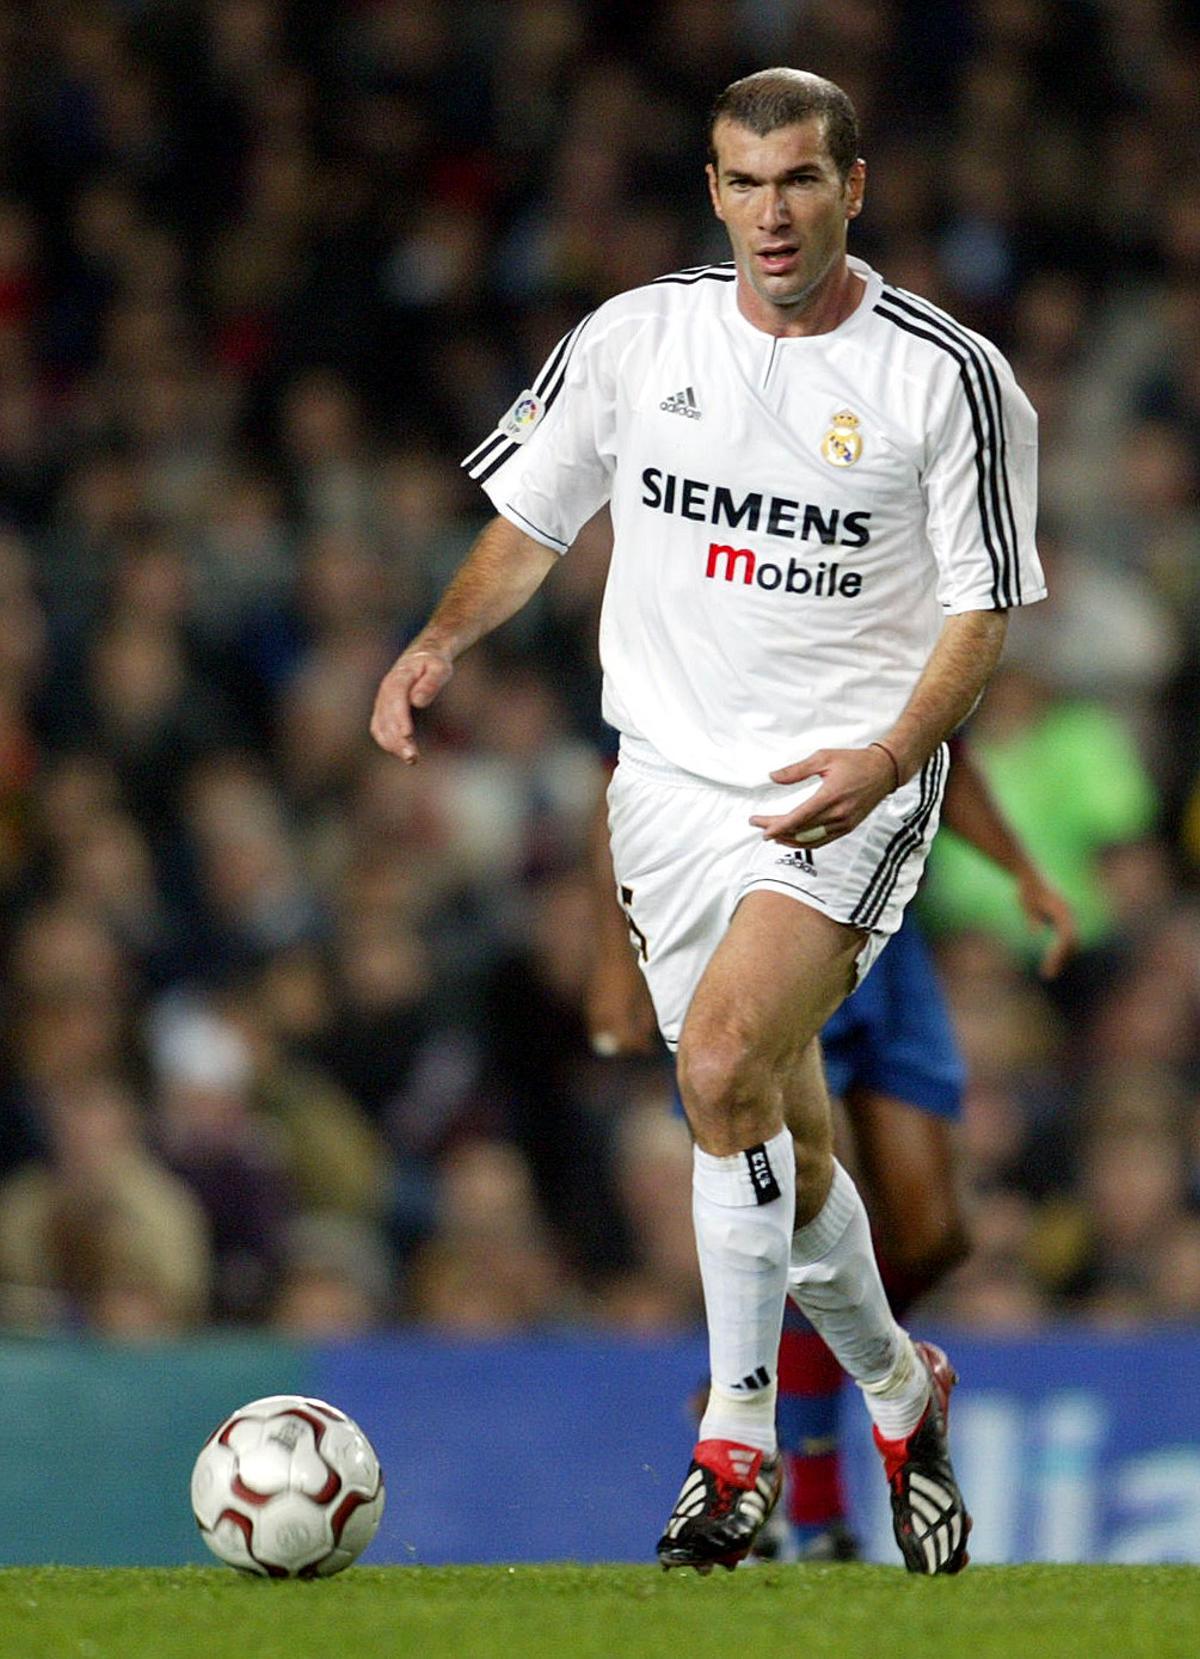 5. Zidane